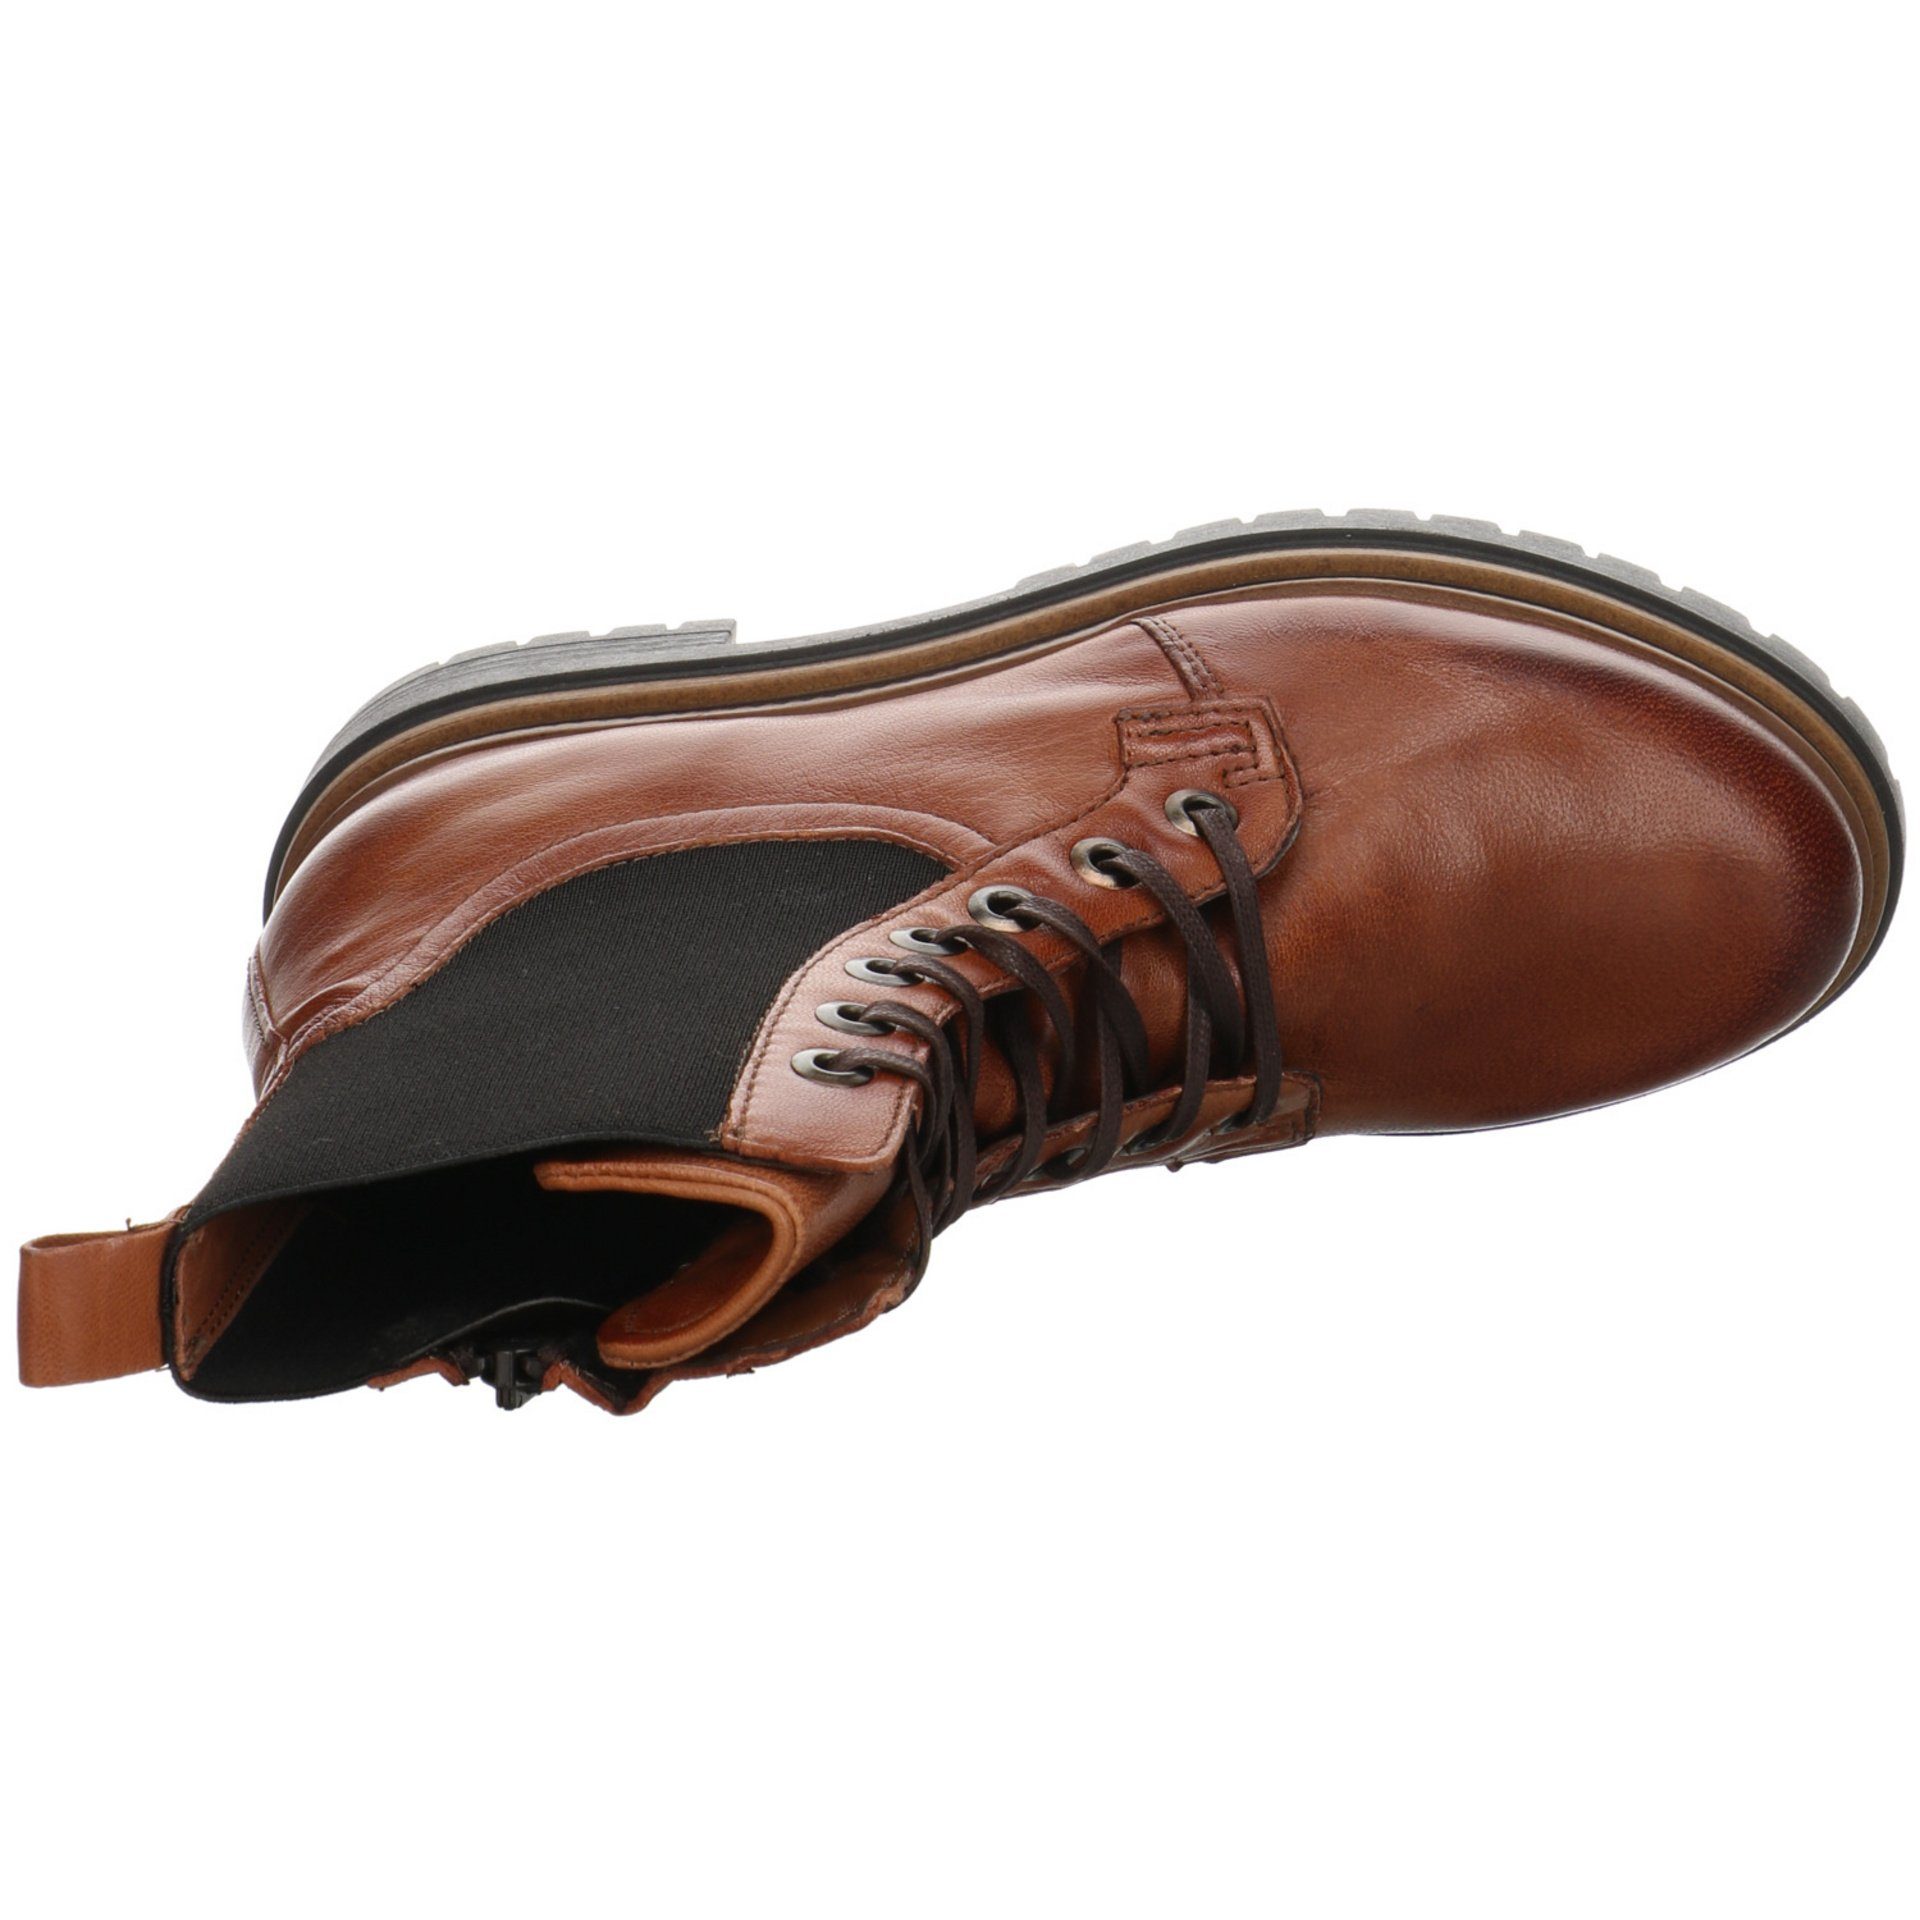 Boots Mjus Freizeit Elegant Stiefeletten Schuhe Damen Schnürstiefelette Leder-/Textilkombination